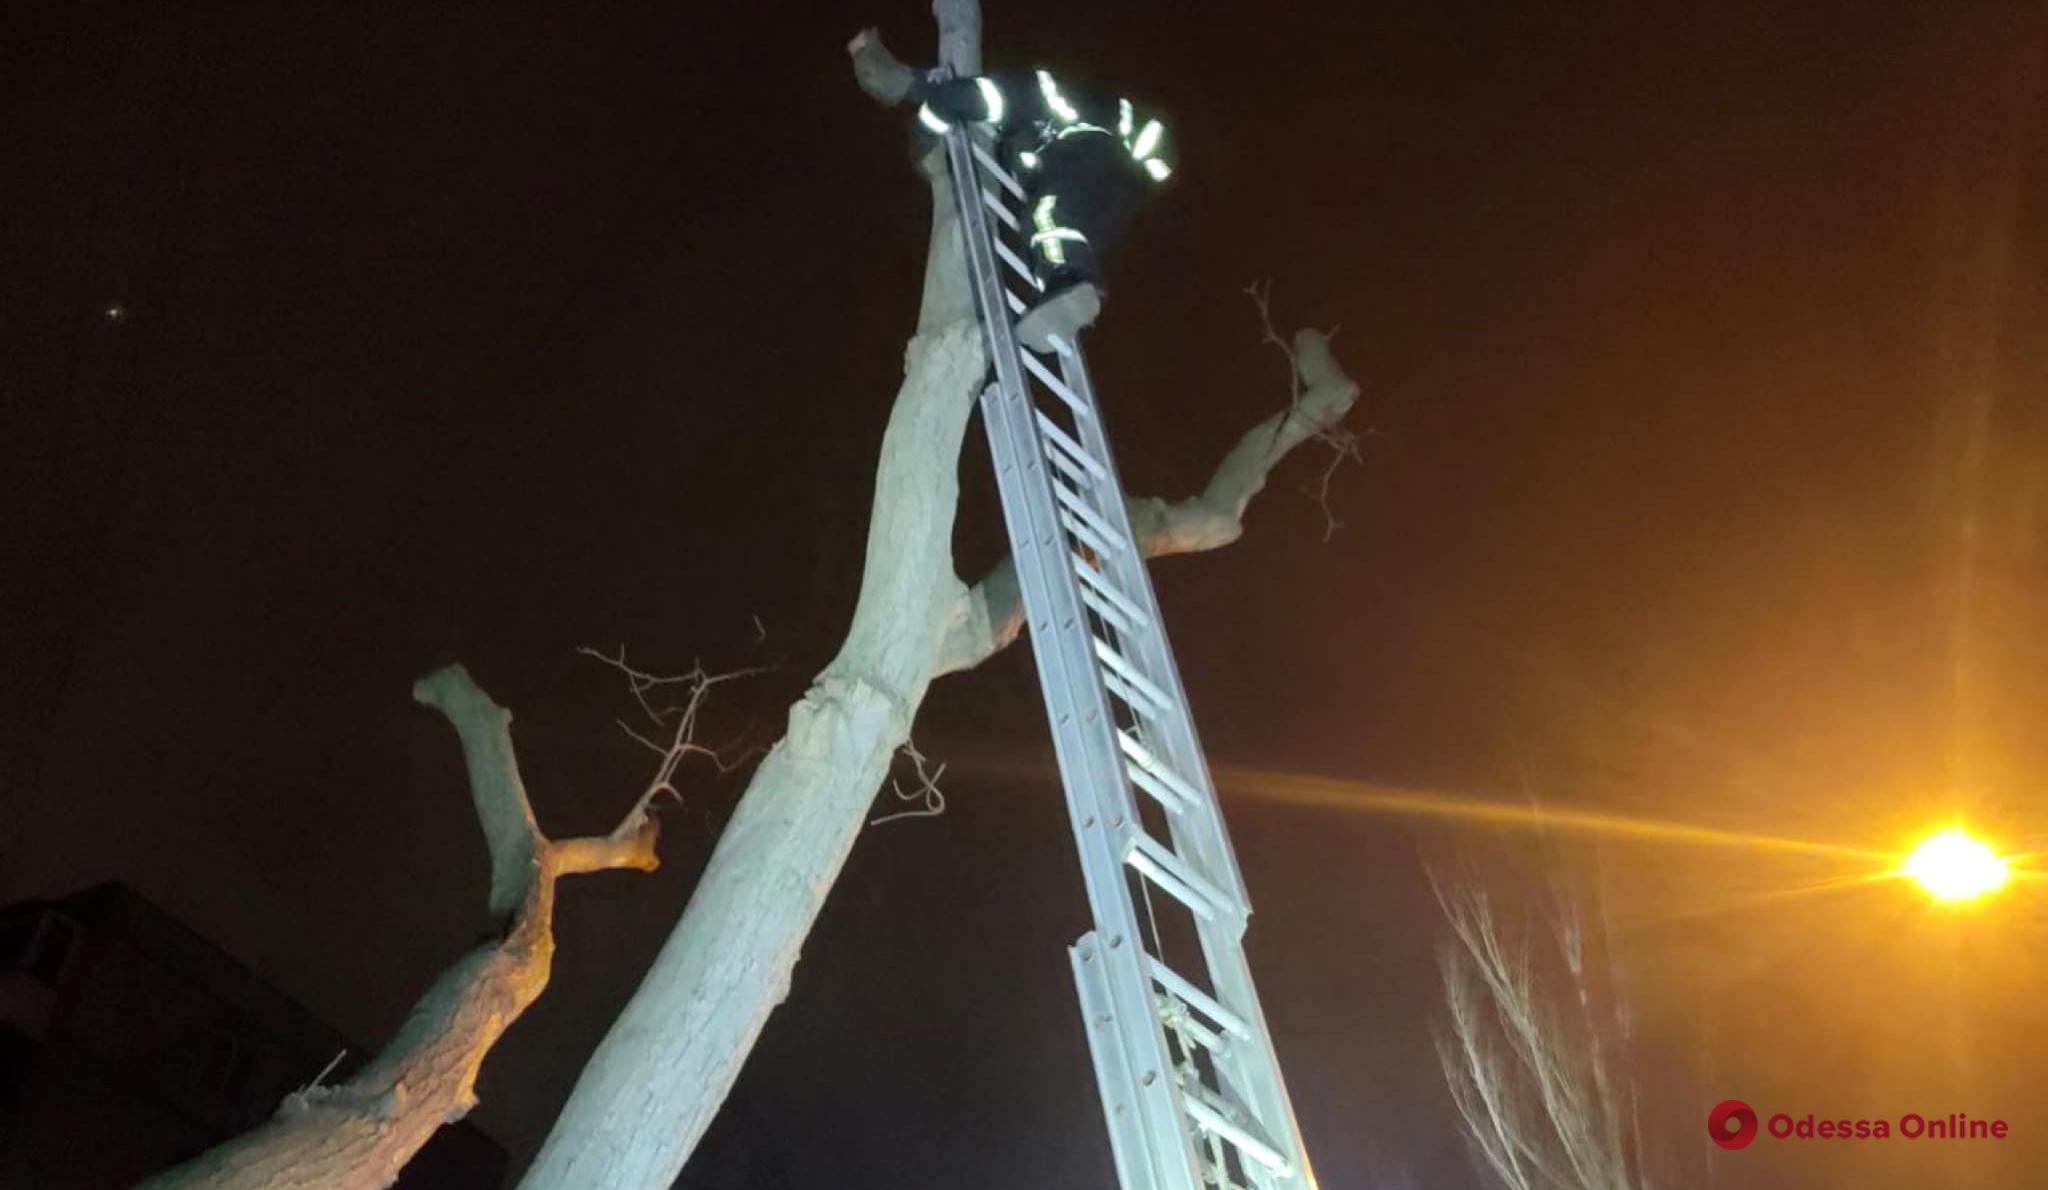 Одесские пожарные снимали кота с дерева